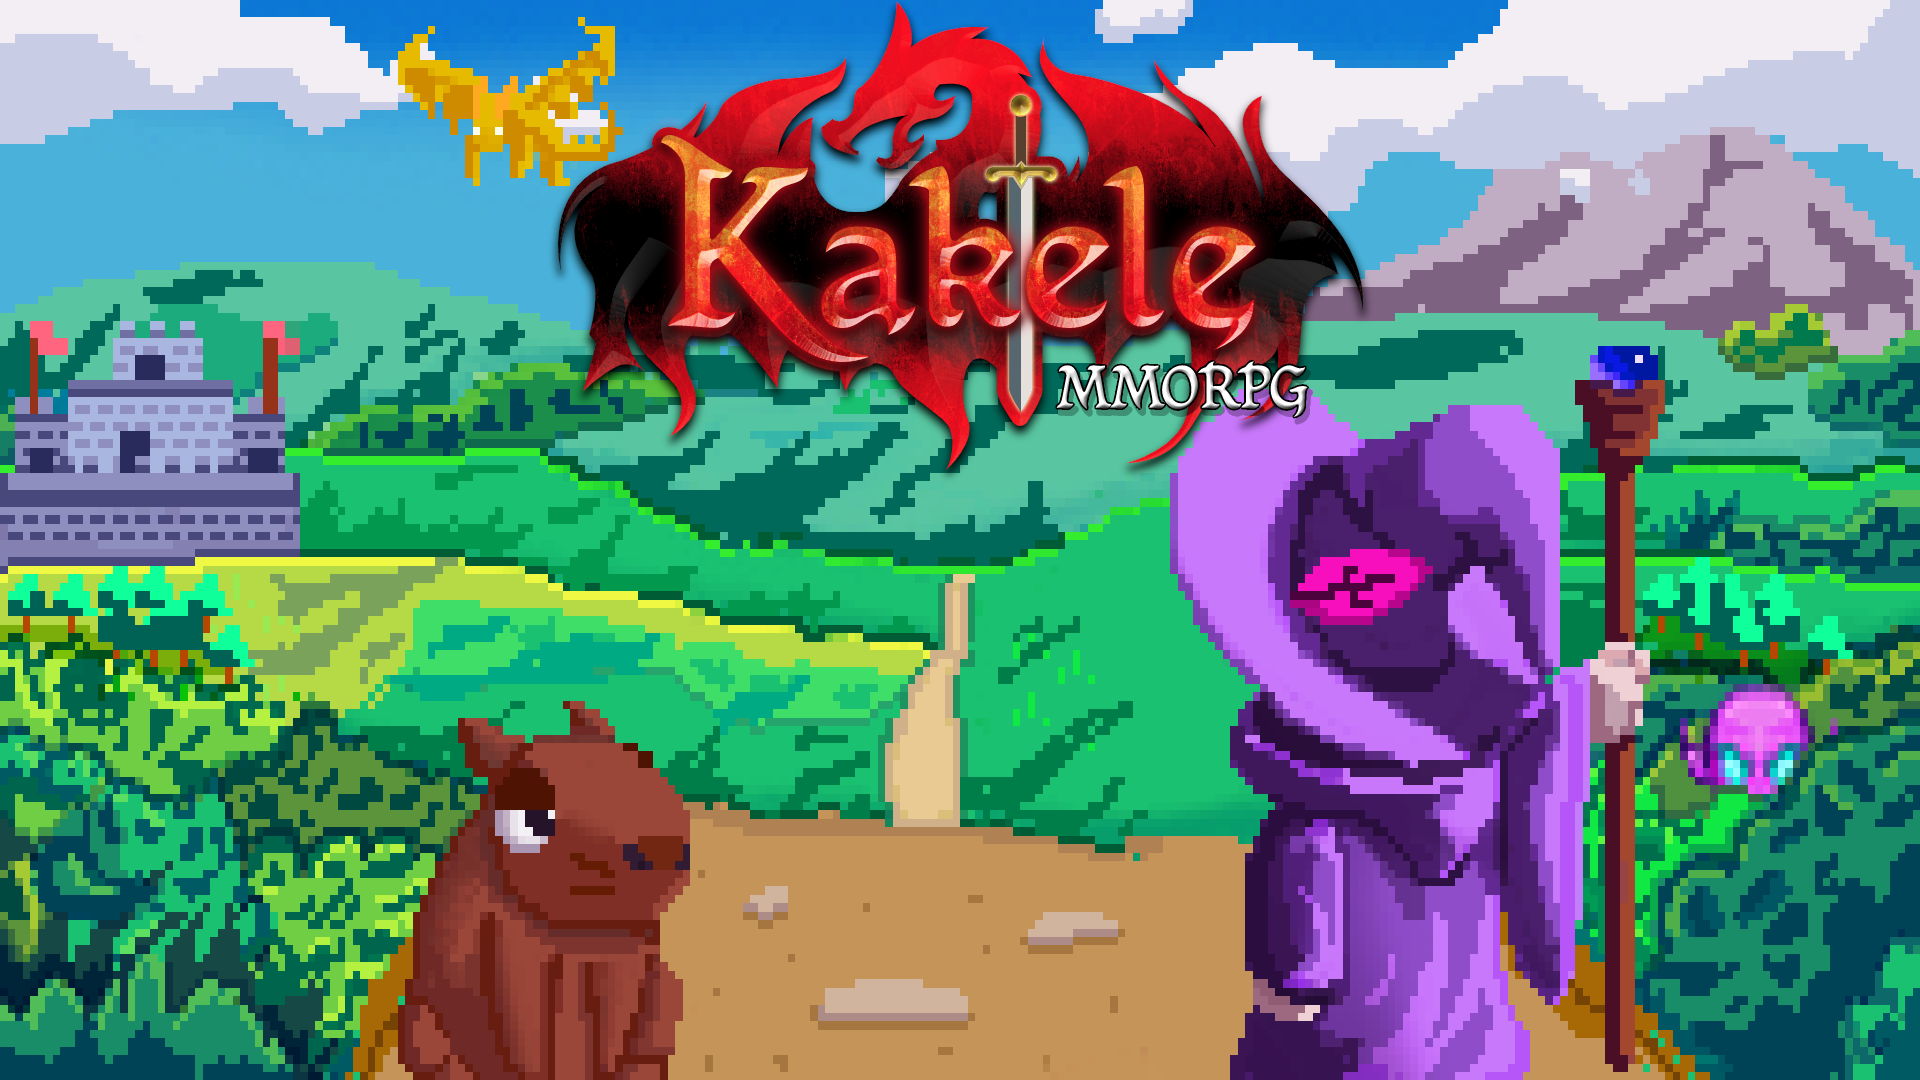 Kakele Online - MMORPG instal the new